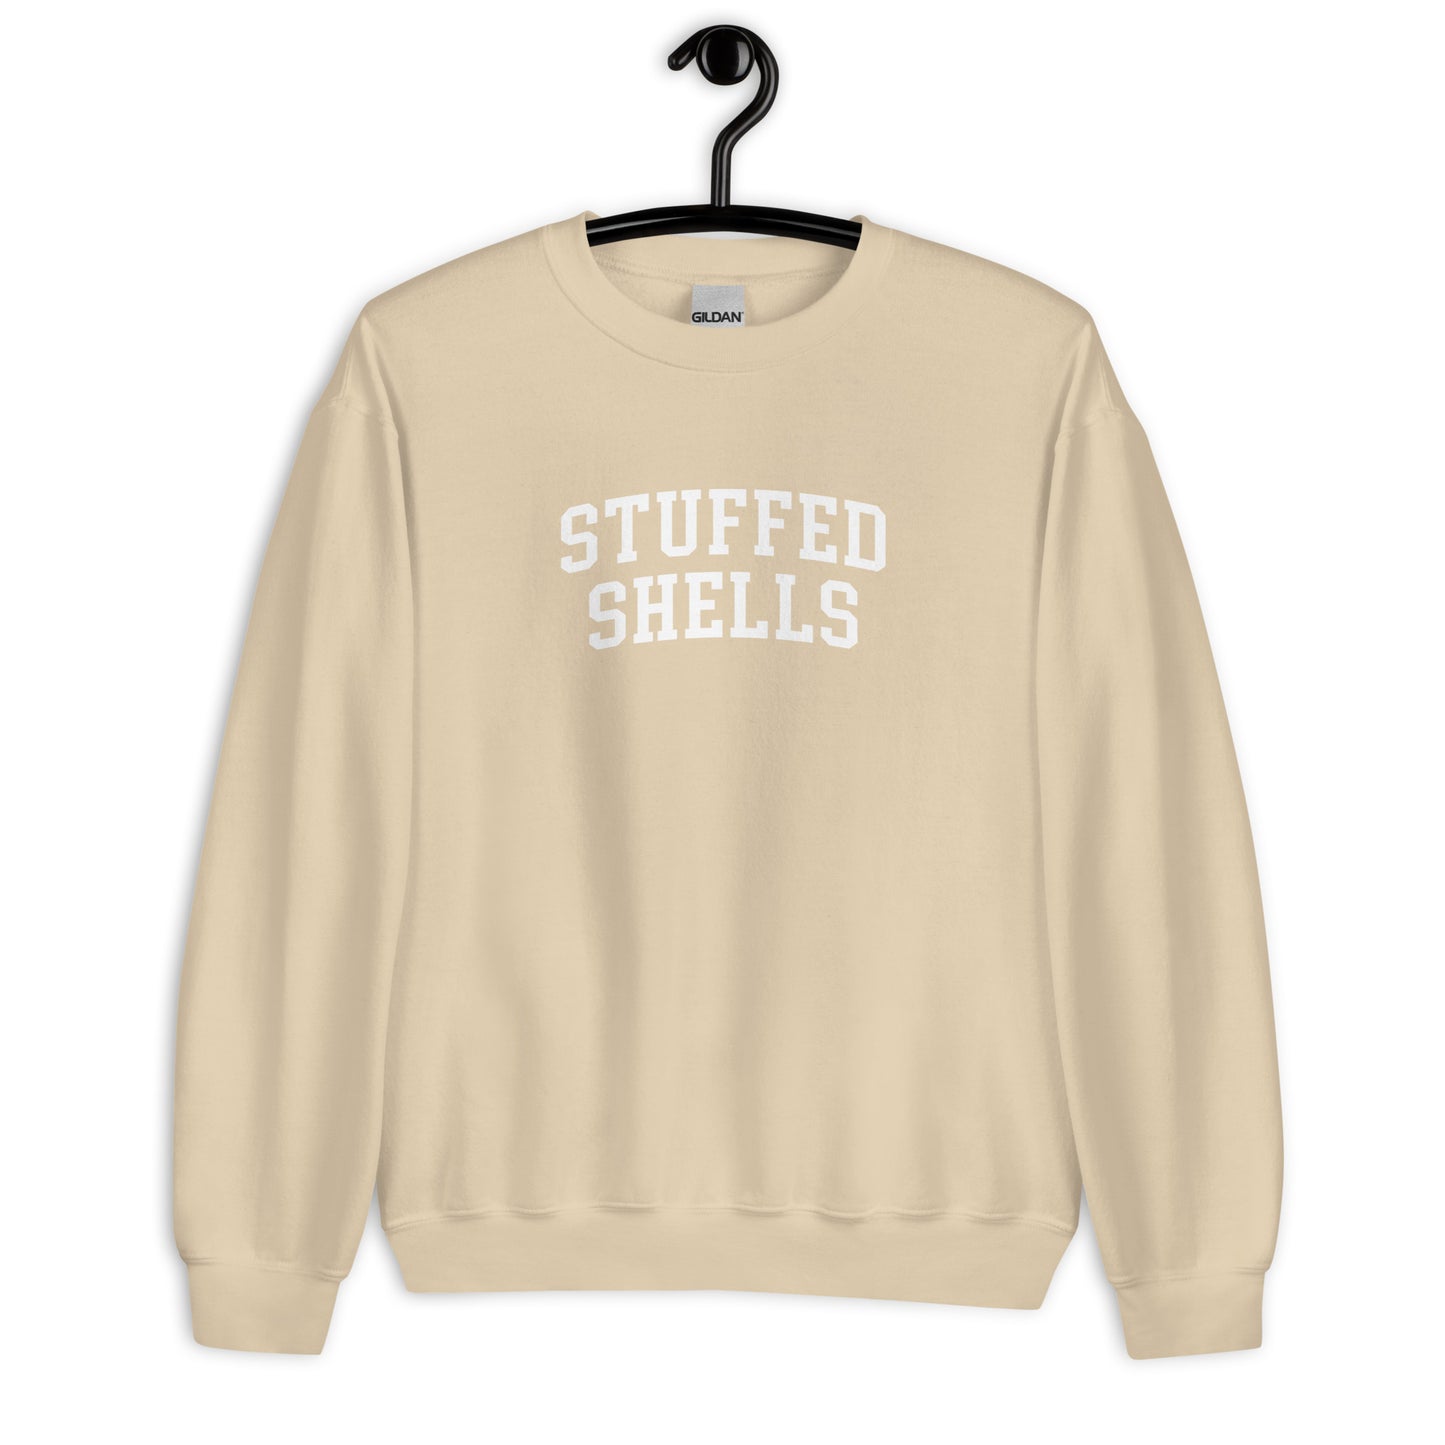 Stuffed Shells Sweatshirt - Arched Font